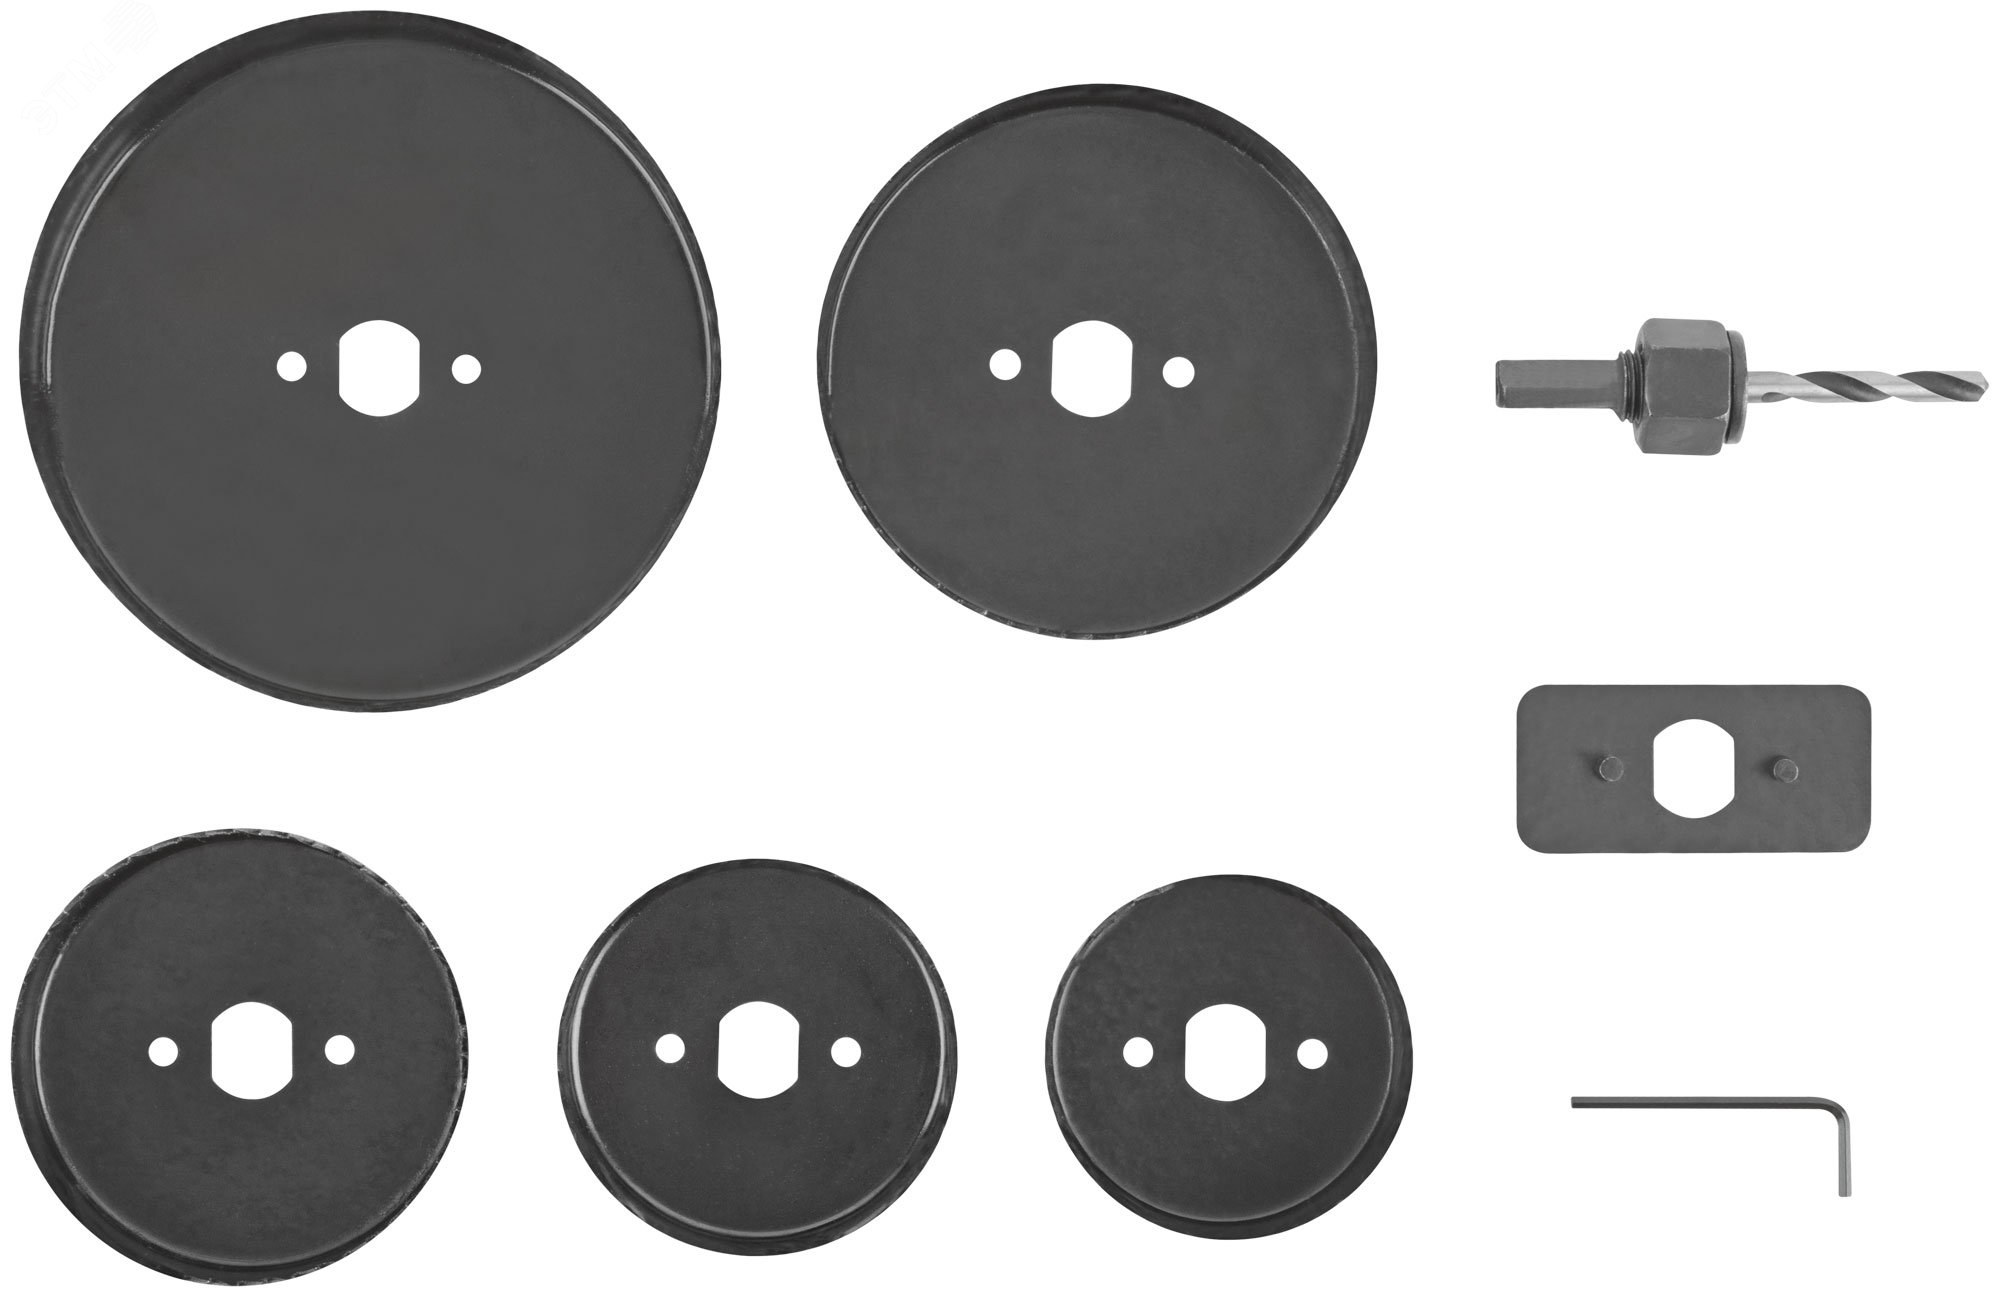 Пилы круговые Профи 68 -127 мм набор 5 шт. (68, 72, 82, 102, 127 мм) в кейсе 36764 FIT - превью